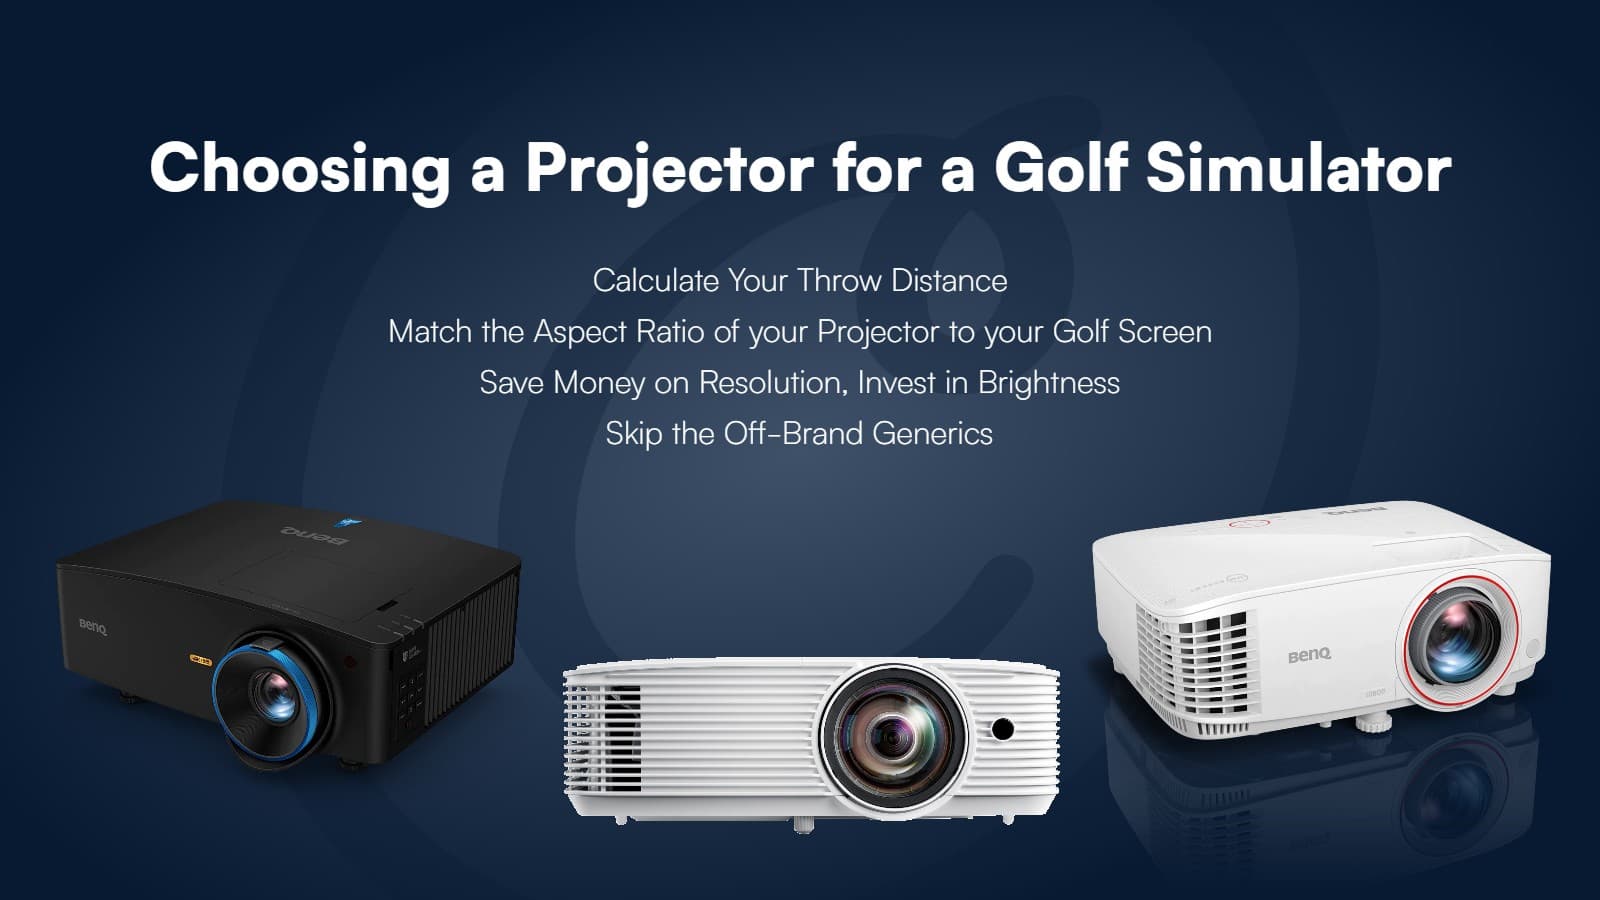 Golf Simulator Projector Comparison